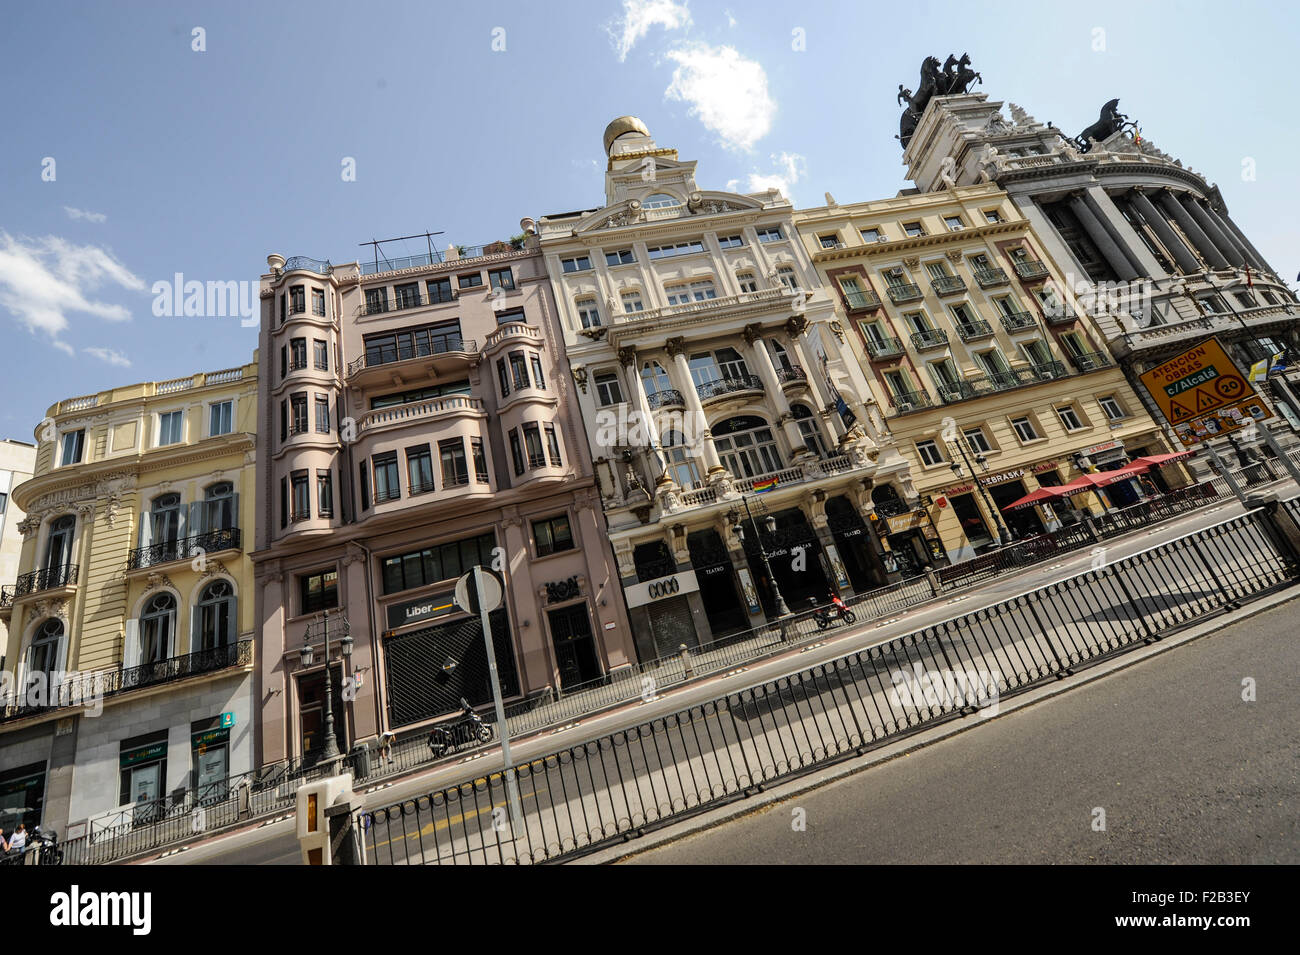 La arquitectura renacentista y barroca en Madrid - arquitectura de renacimiento y barroco en Madrid Foto de stock